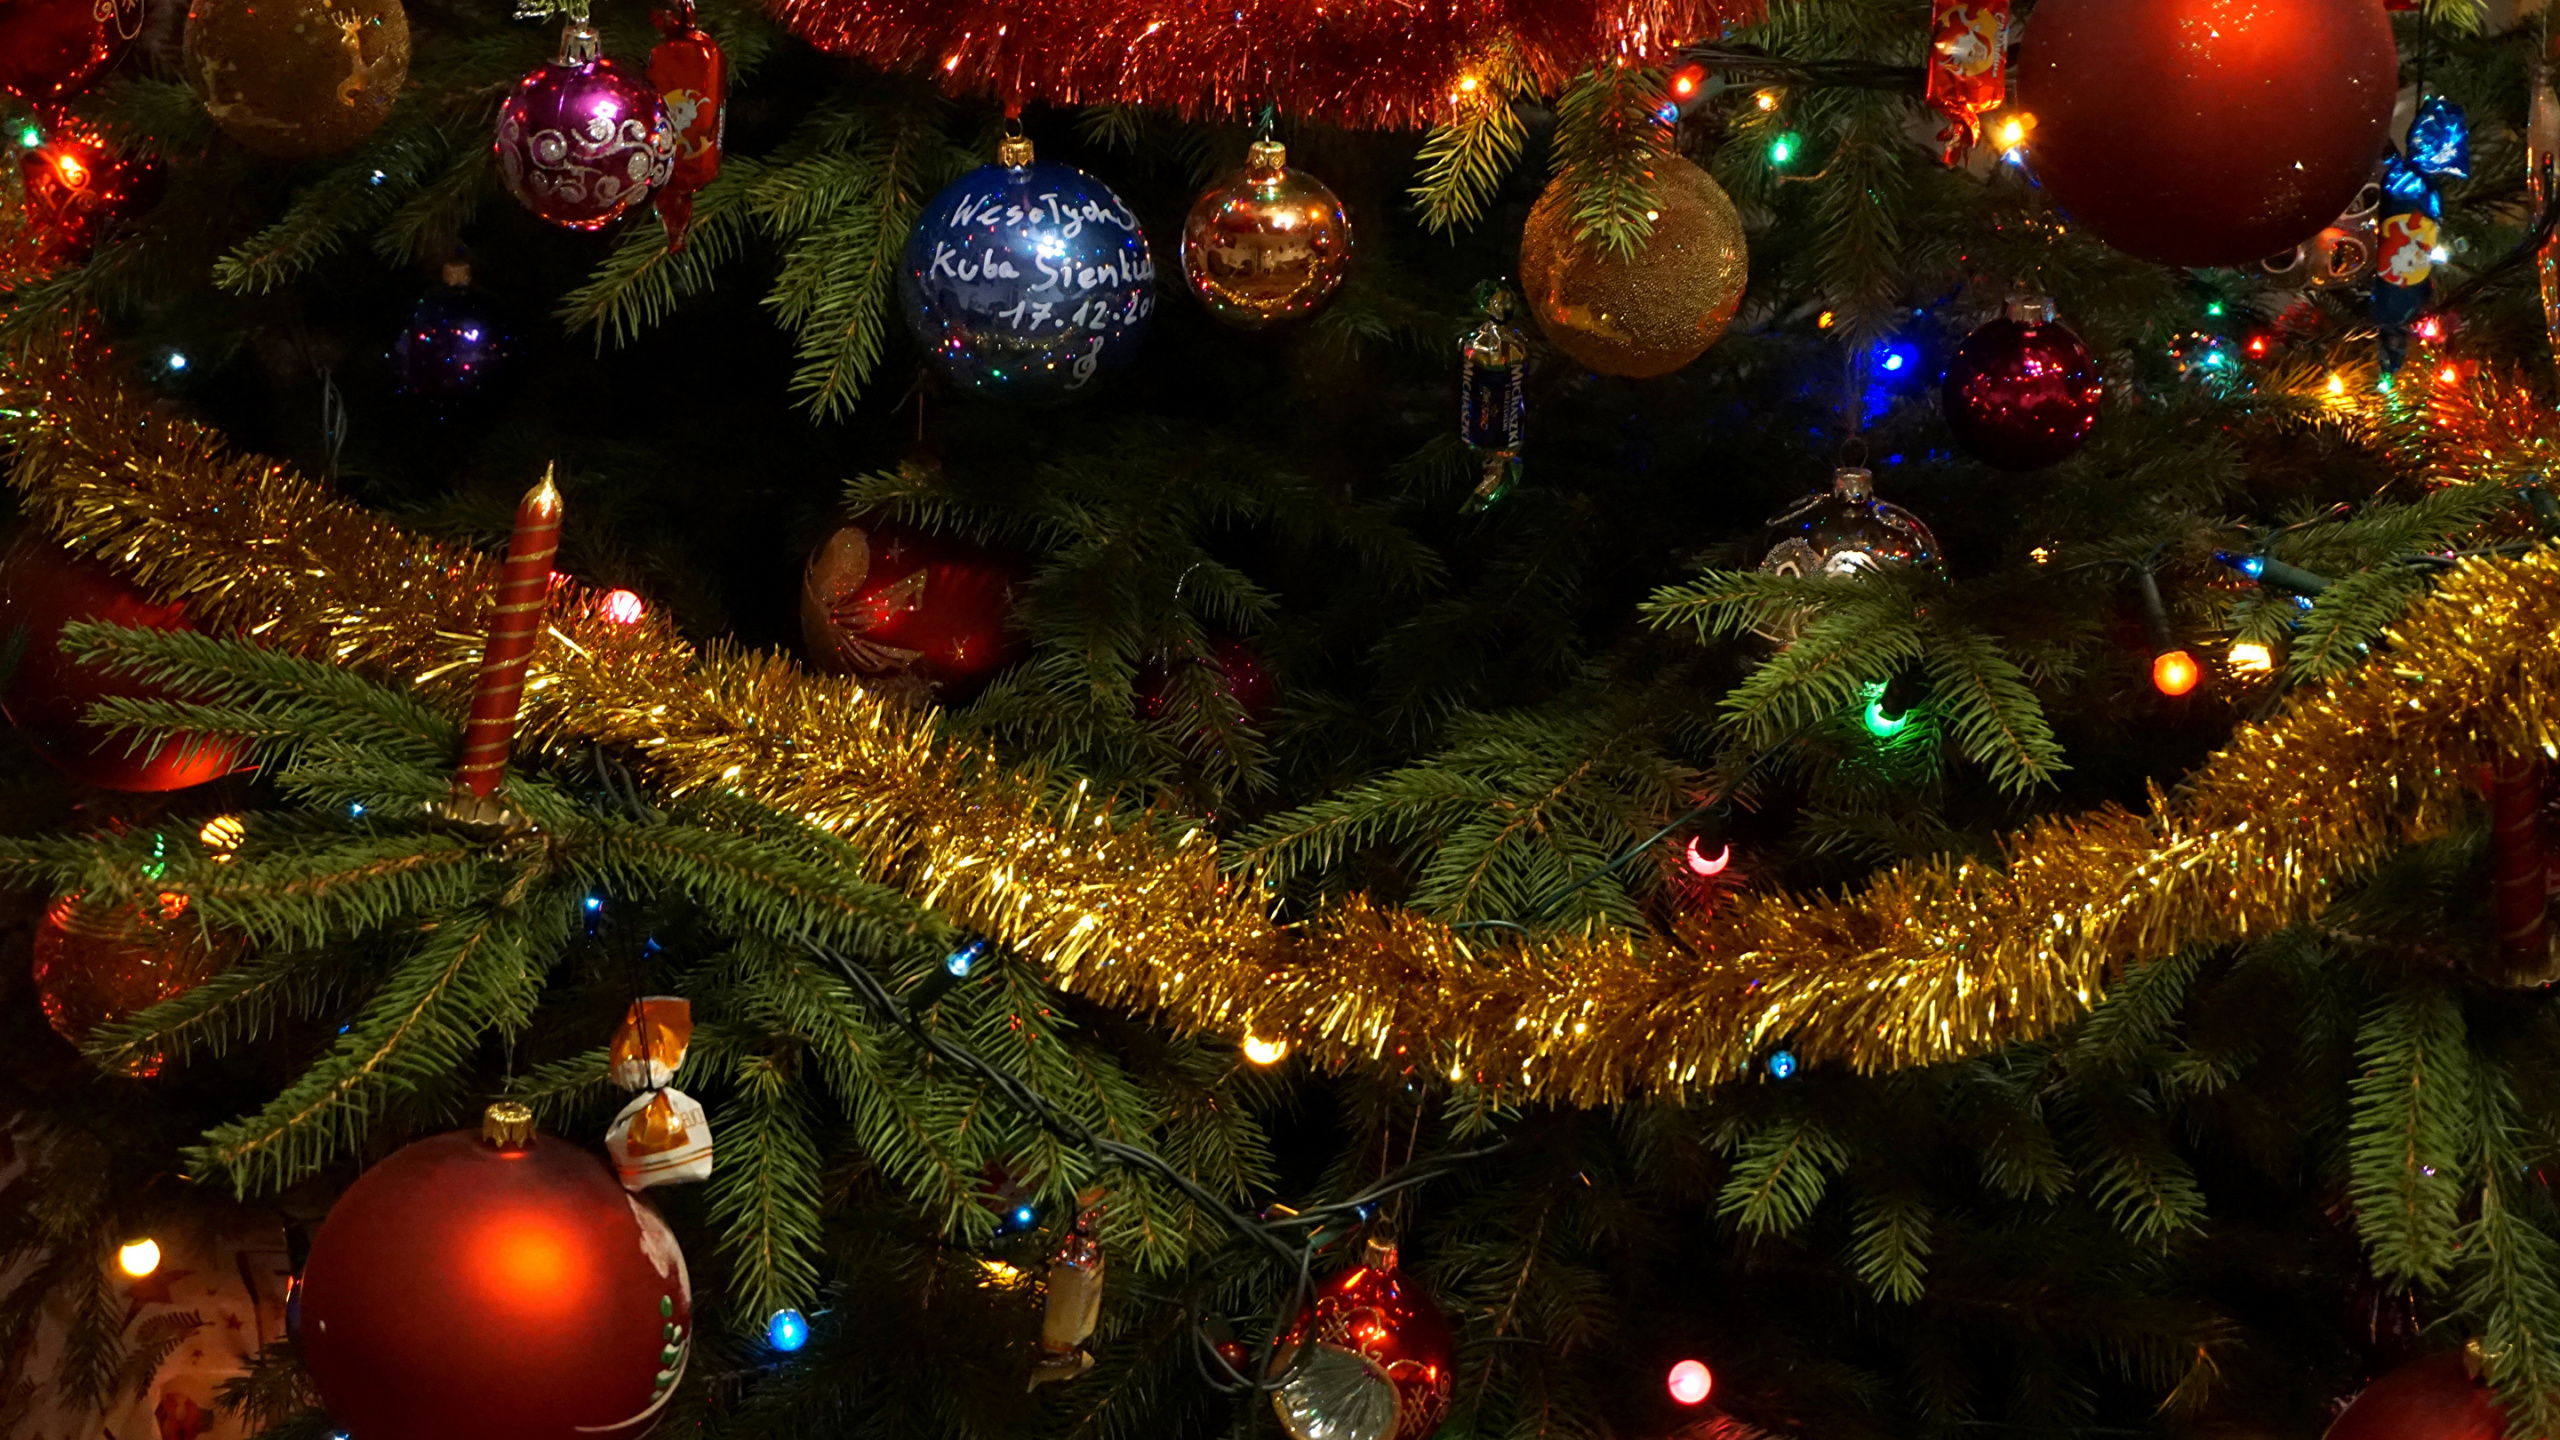 Weihnachten, Weihnachtsbeleuchtung, Weihnachtsbaum, Weihnachtsdekoration, Künstlicher Weihnachtsbaum. Wallpaper in 2560x1440 Resolution